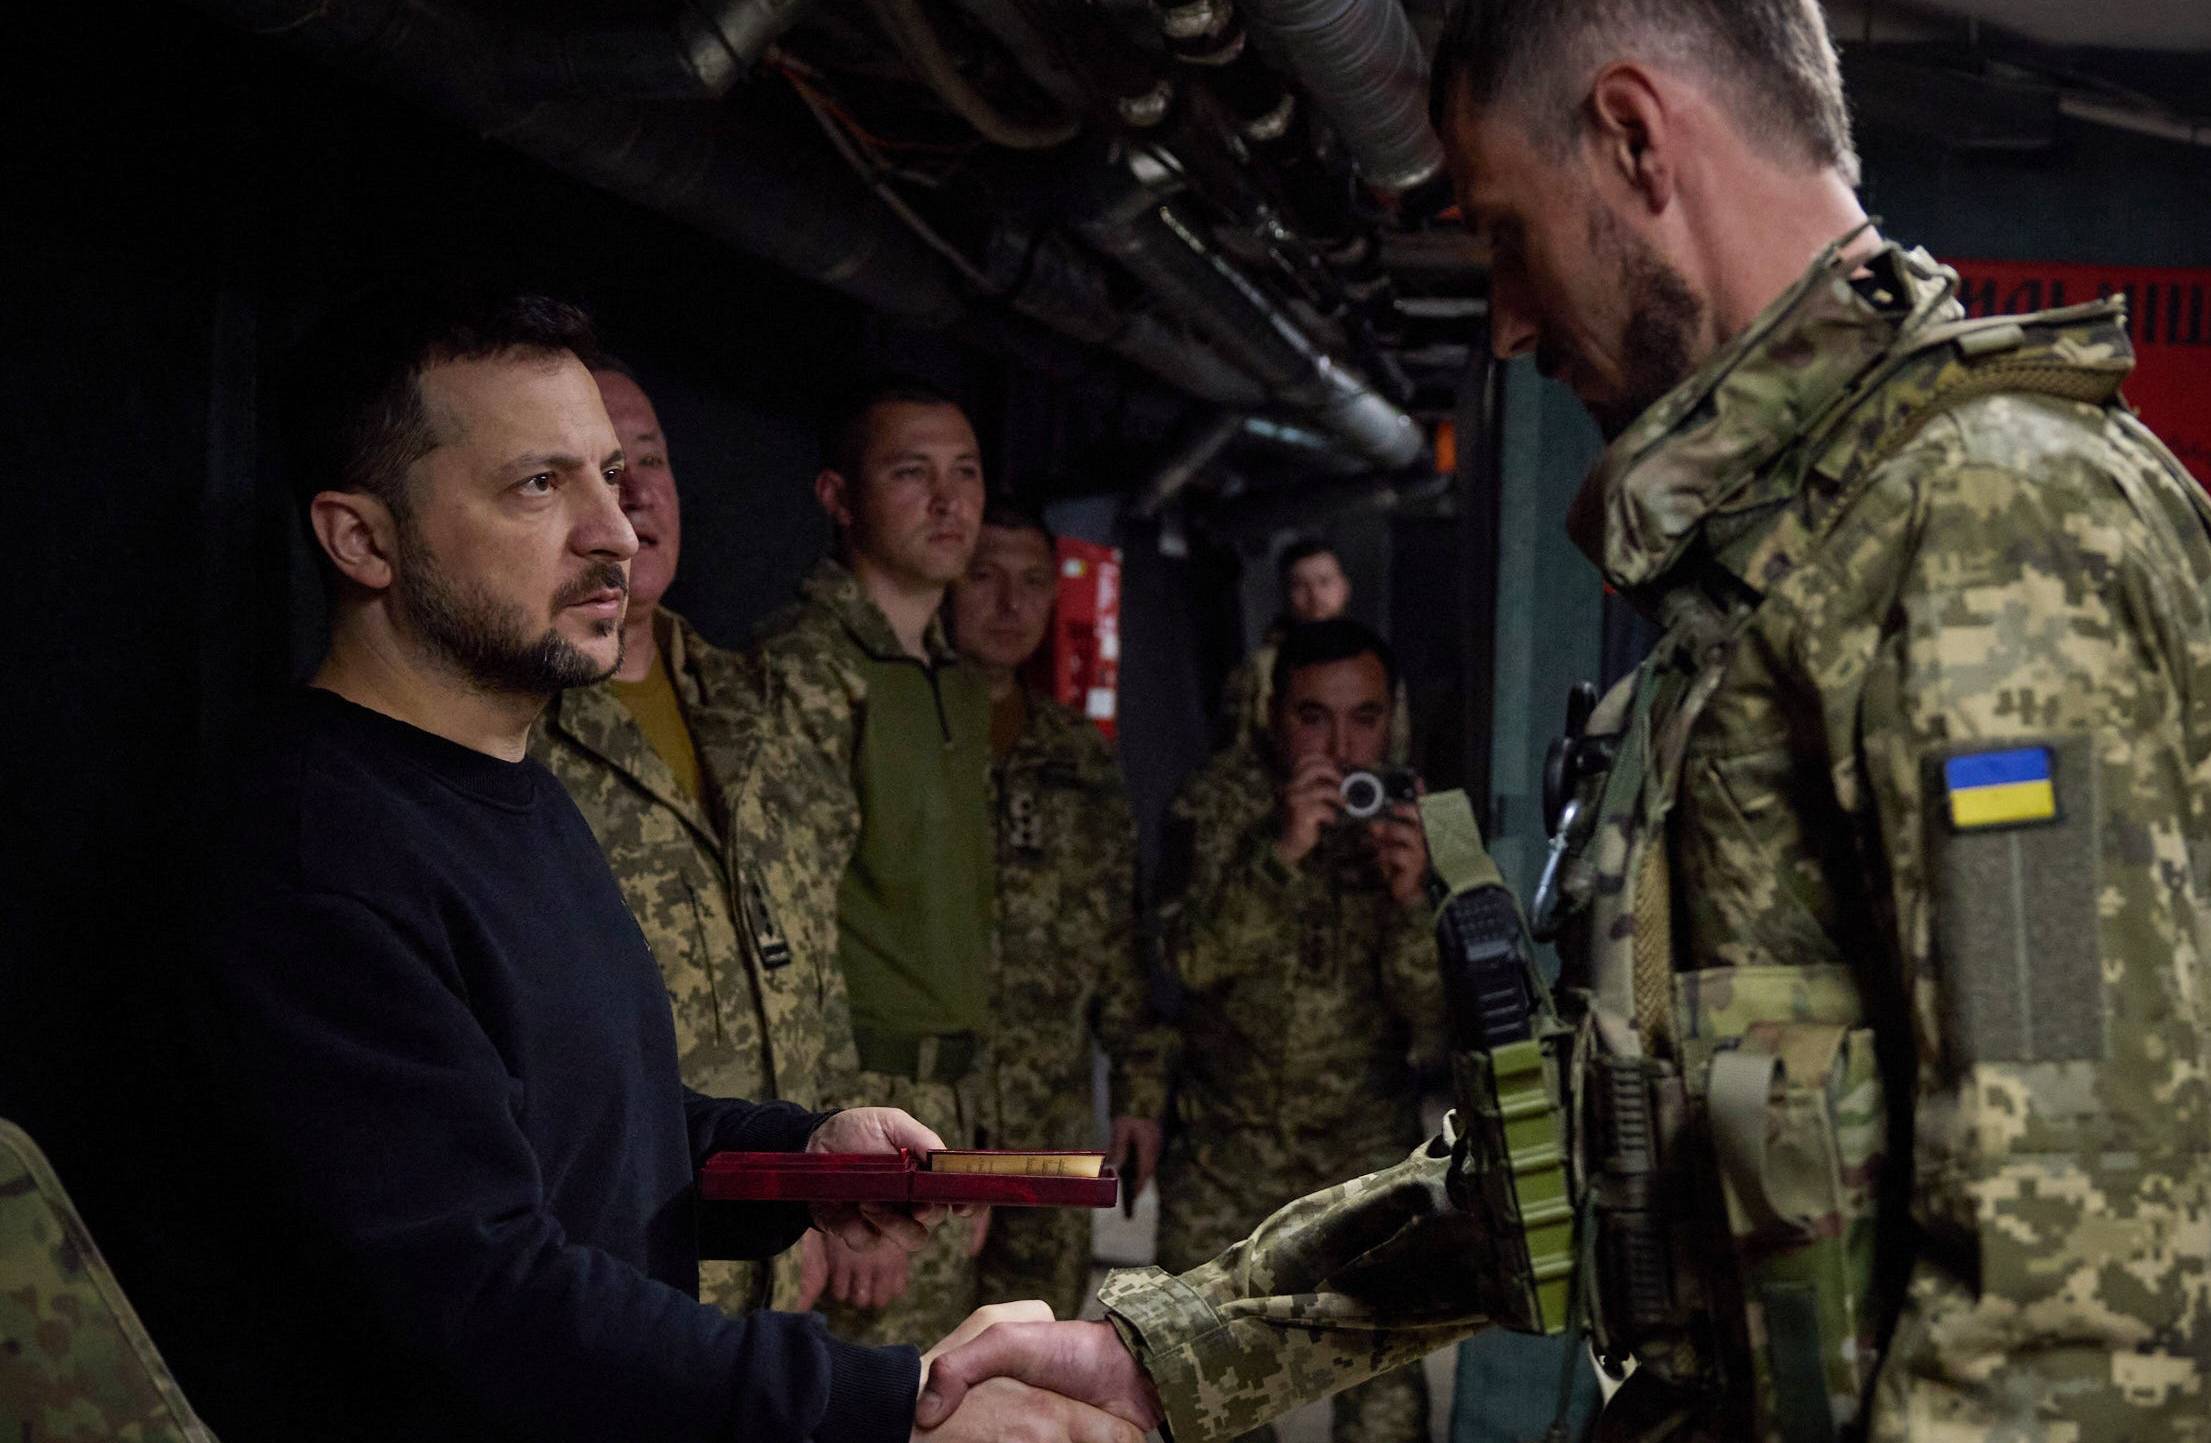 Mężczyzna w ciemnym stroju ściska rękę żołnoierzowi ukraińskiemu